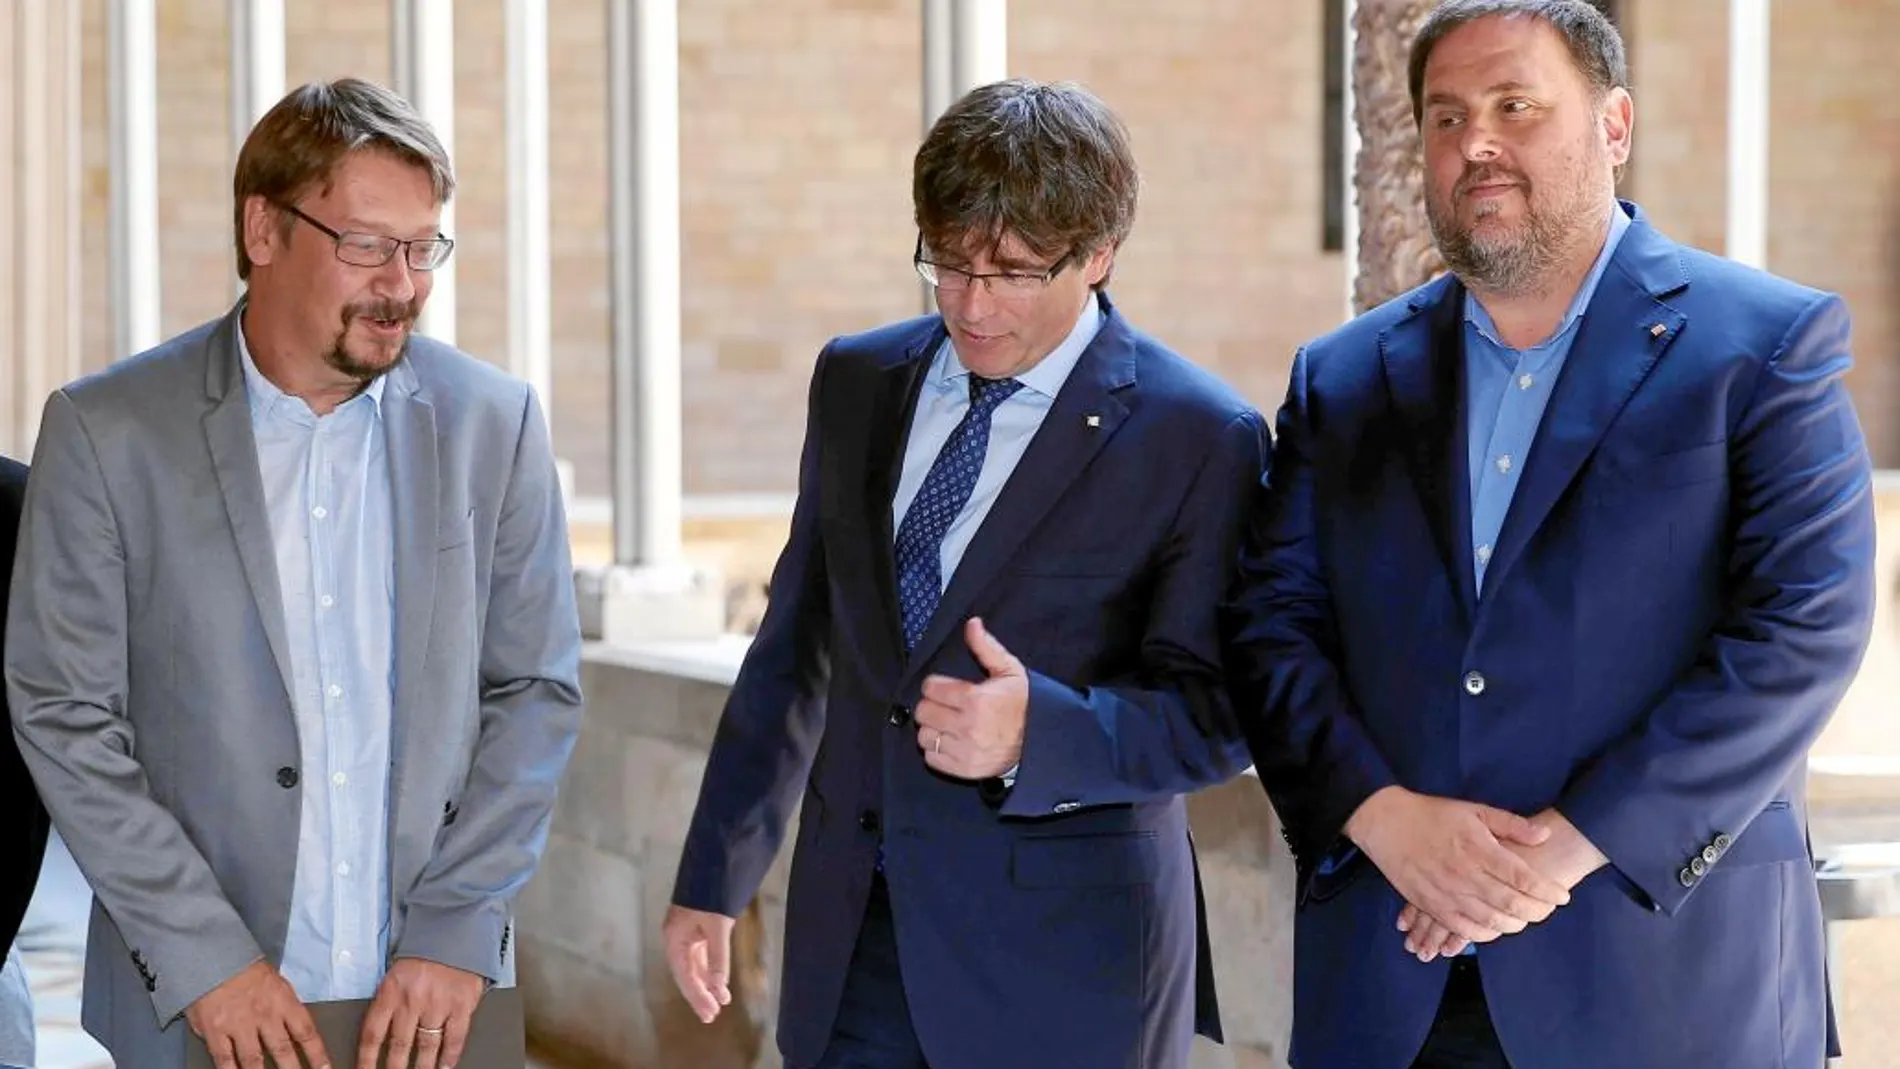 El líder de los «comunes», Xavier Domènech, junto al presidente y vicepresidente del Govern, Carles Puigdemont y Oriol Junqueras